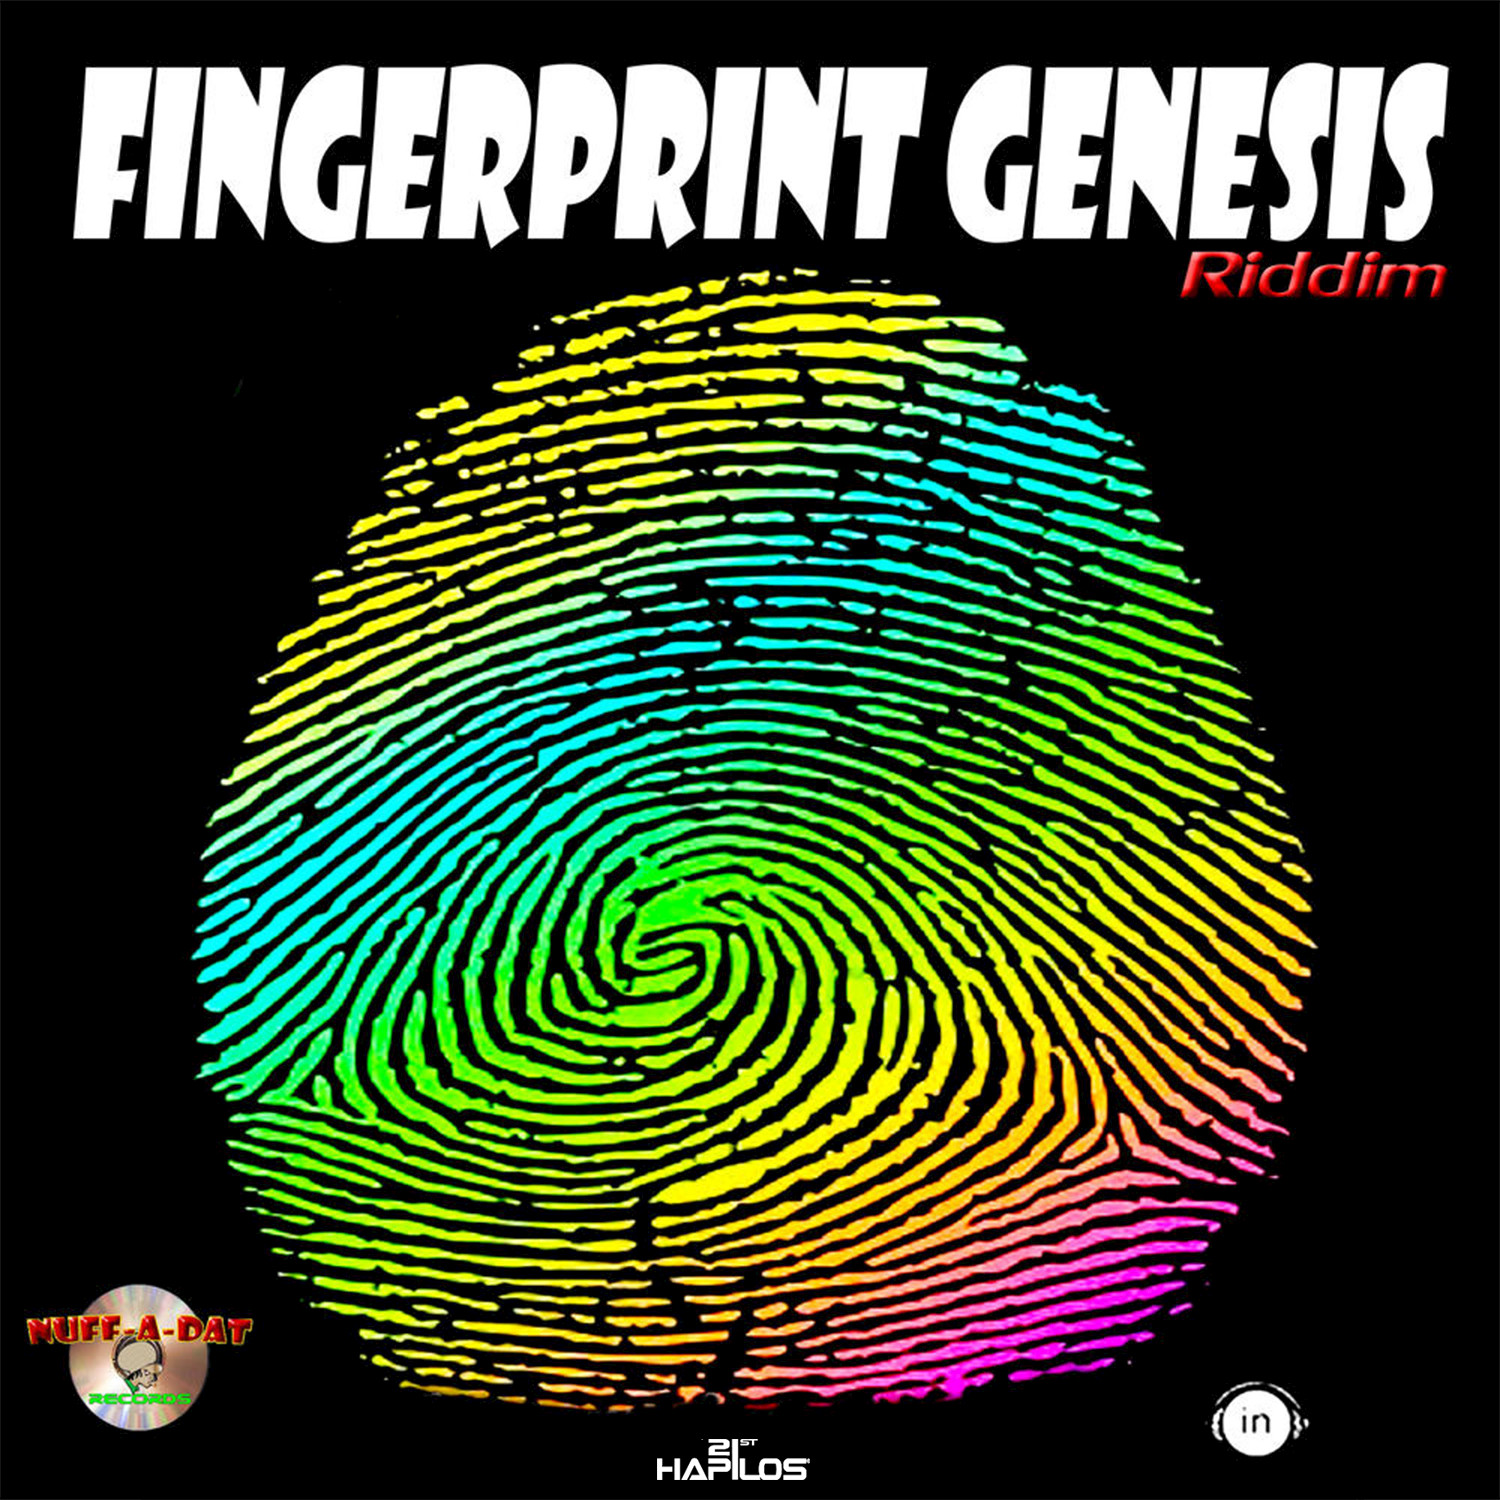 Fingerprint Genesis Riddim